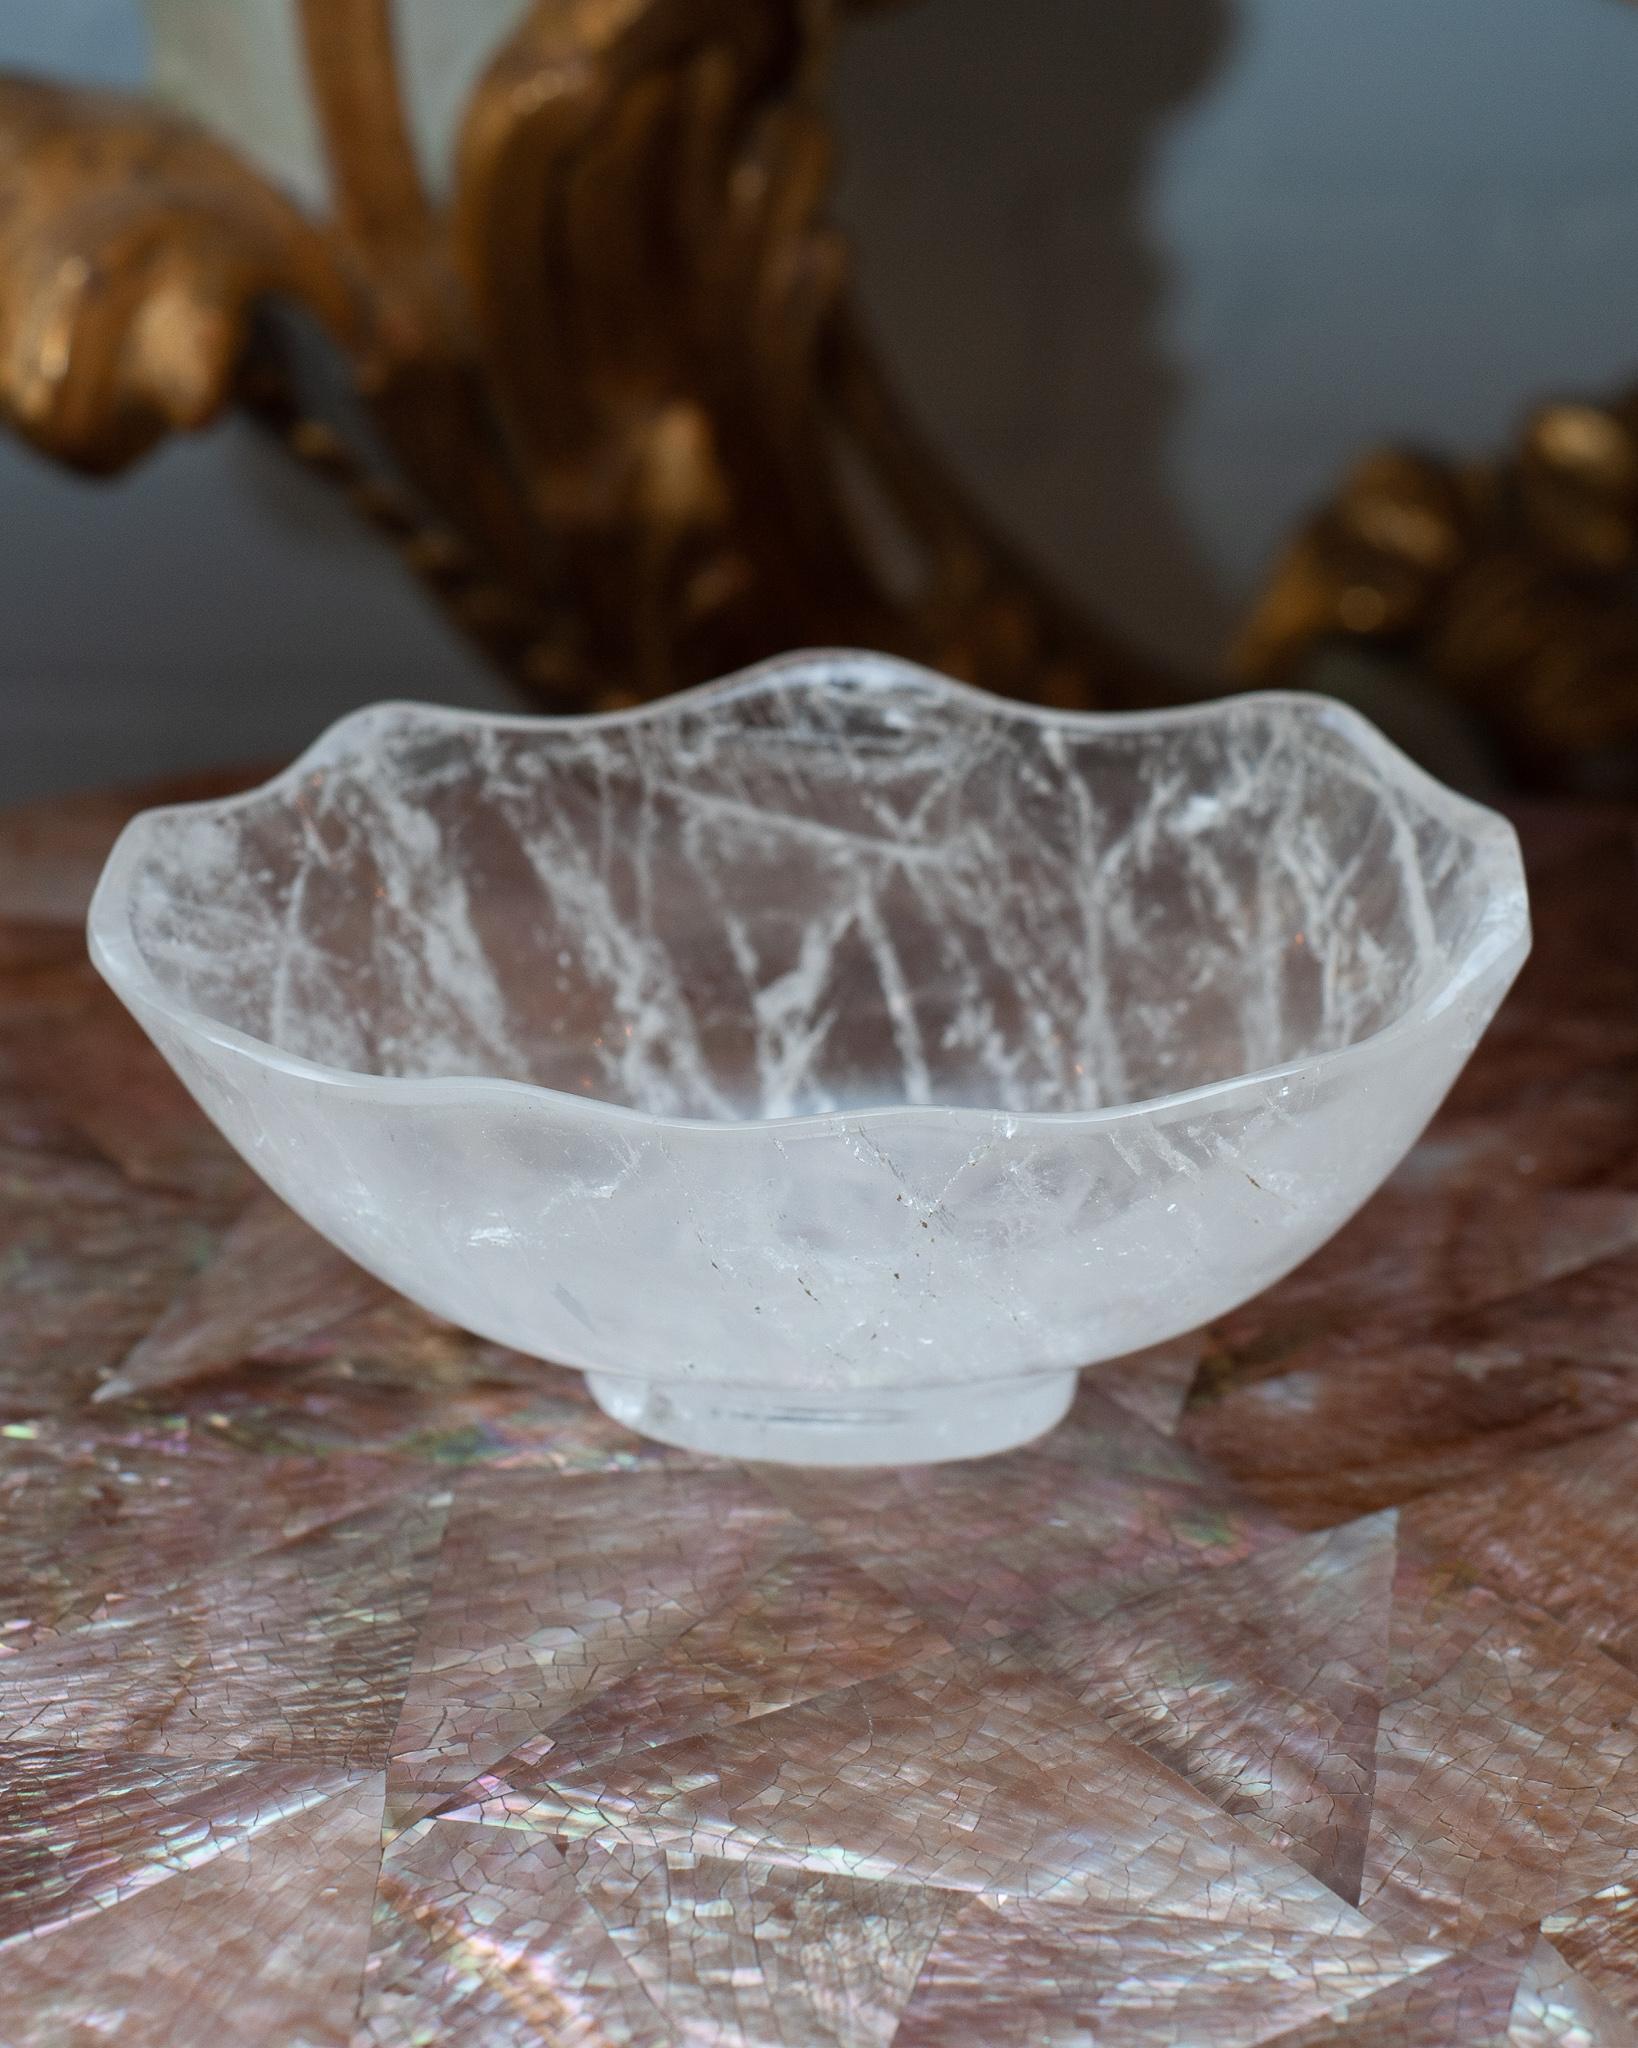 Apportez l'énergie curative du cristal de roche dans votre maison avec ce magnifique bol sculpté. Ce bol délicatement sculpté avec un bord festonné peut être rempli de bonbons ou rester sculptural en tant que récipient vide et placé dans n'importe